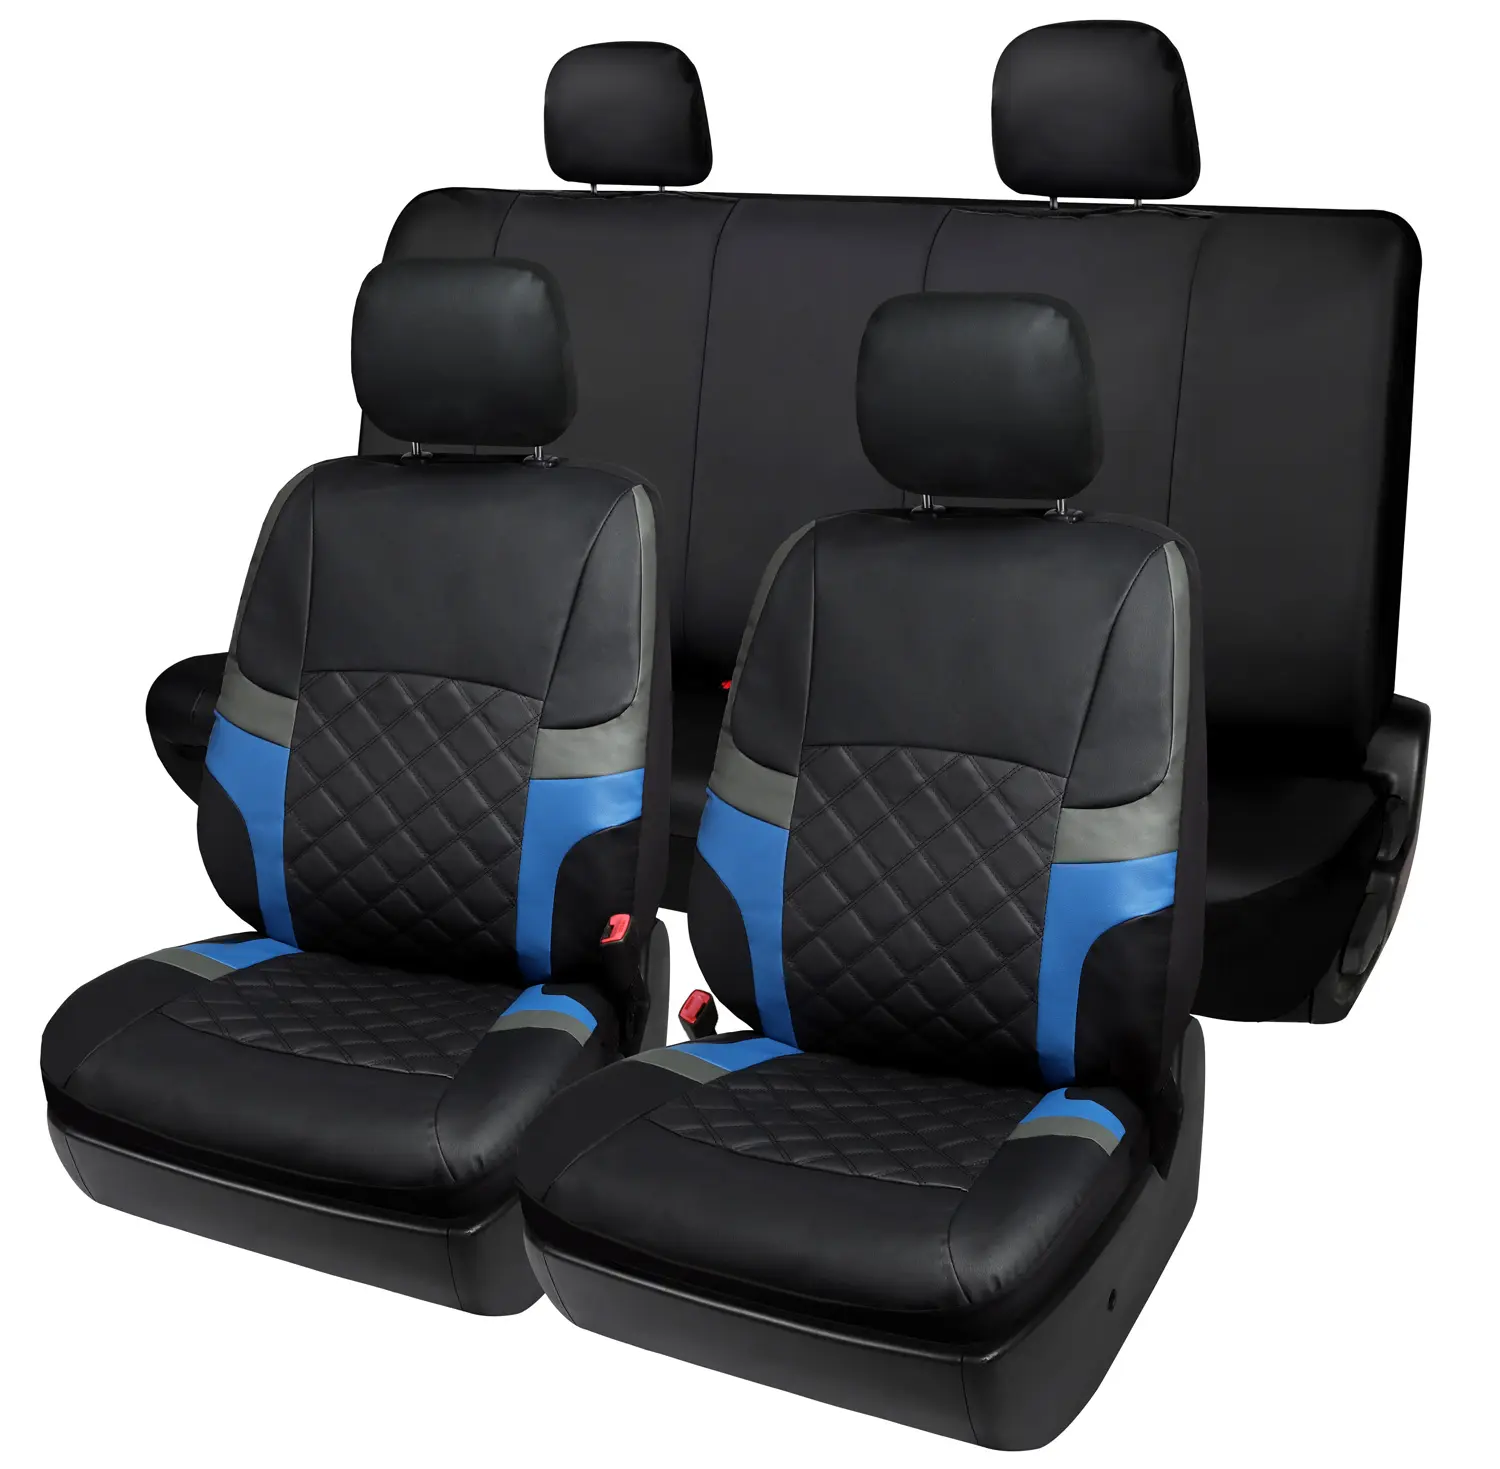 Housse de siège de voiture en cuir 13pcs personnalisée noire universelle imperméable ensemble de housse de siège de voiture